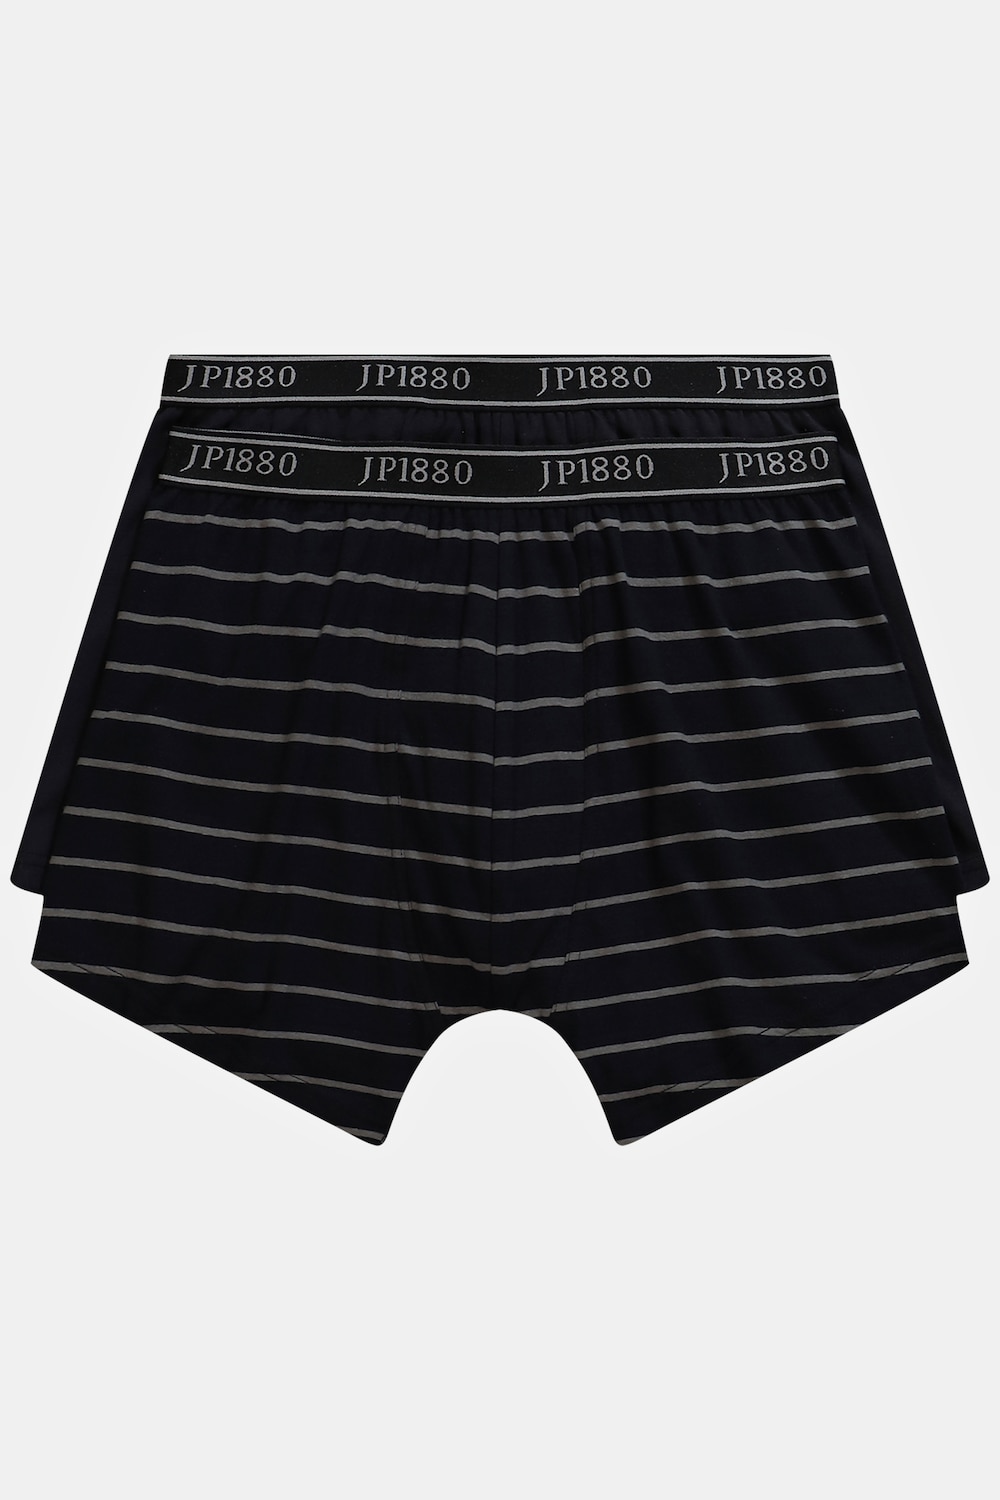 grandes tailles lot de 2 boxers flexnamic®. label oeko-tex., hommes, noir, taille: 6xl, coton, jp1880